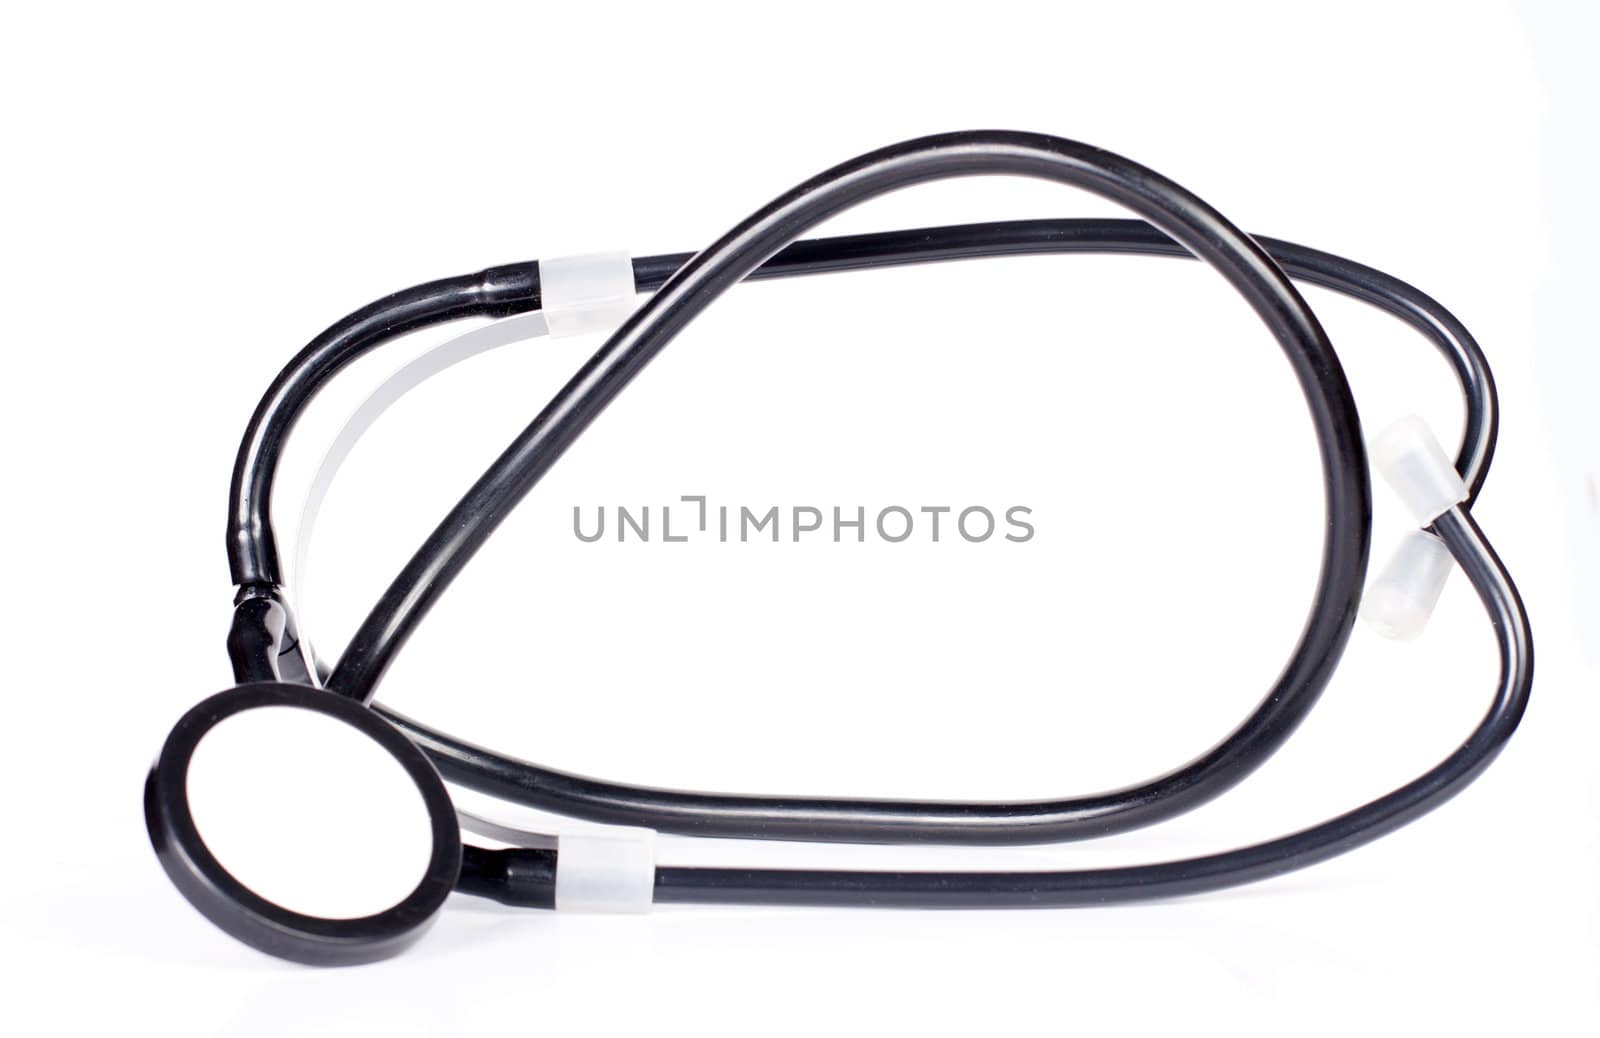 Black specialized medical stethoscope on white background